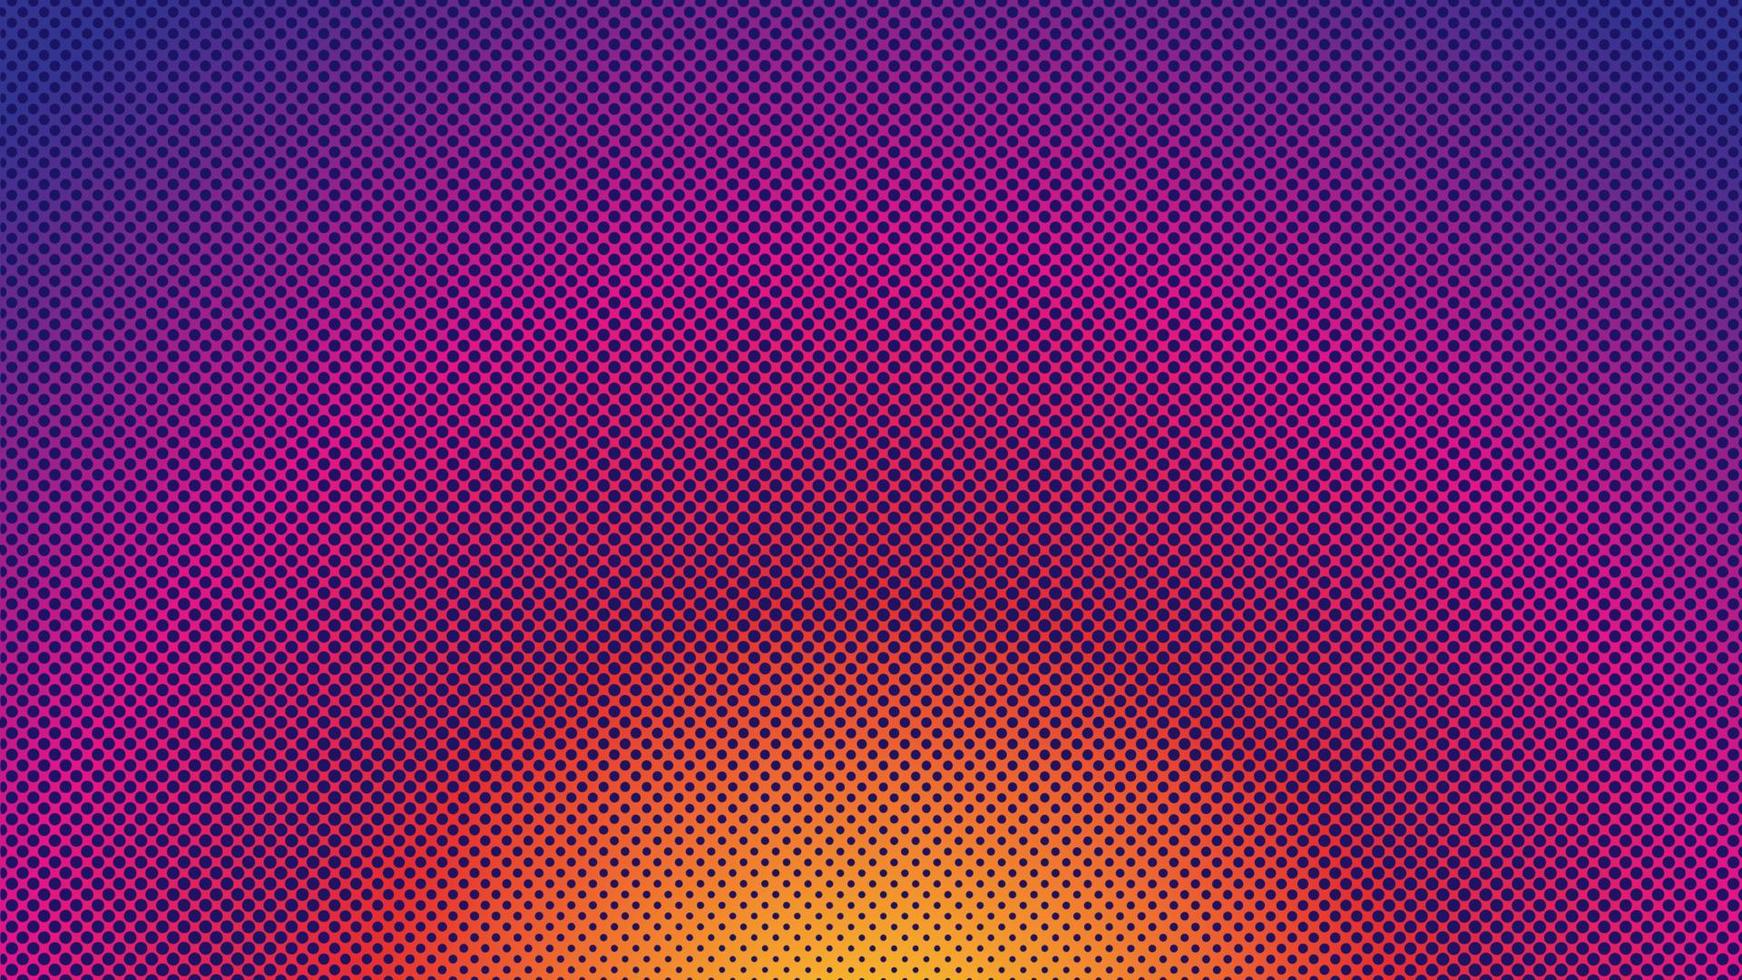 plantilla de diseño de fondo de semitonos coloridos, arte pop, ilustración de patrón de puntos abstractos, elemento de textura moderno, color degradado radial, papel tapiz de gradación púrpura violeta naranja magenta vector